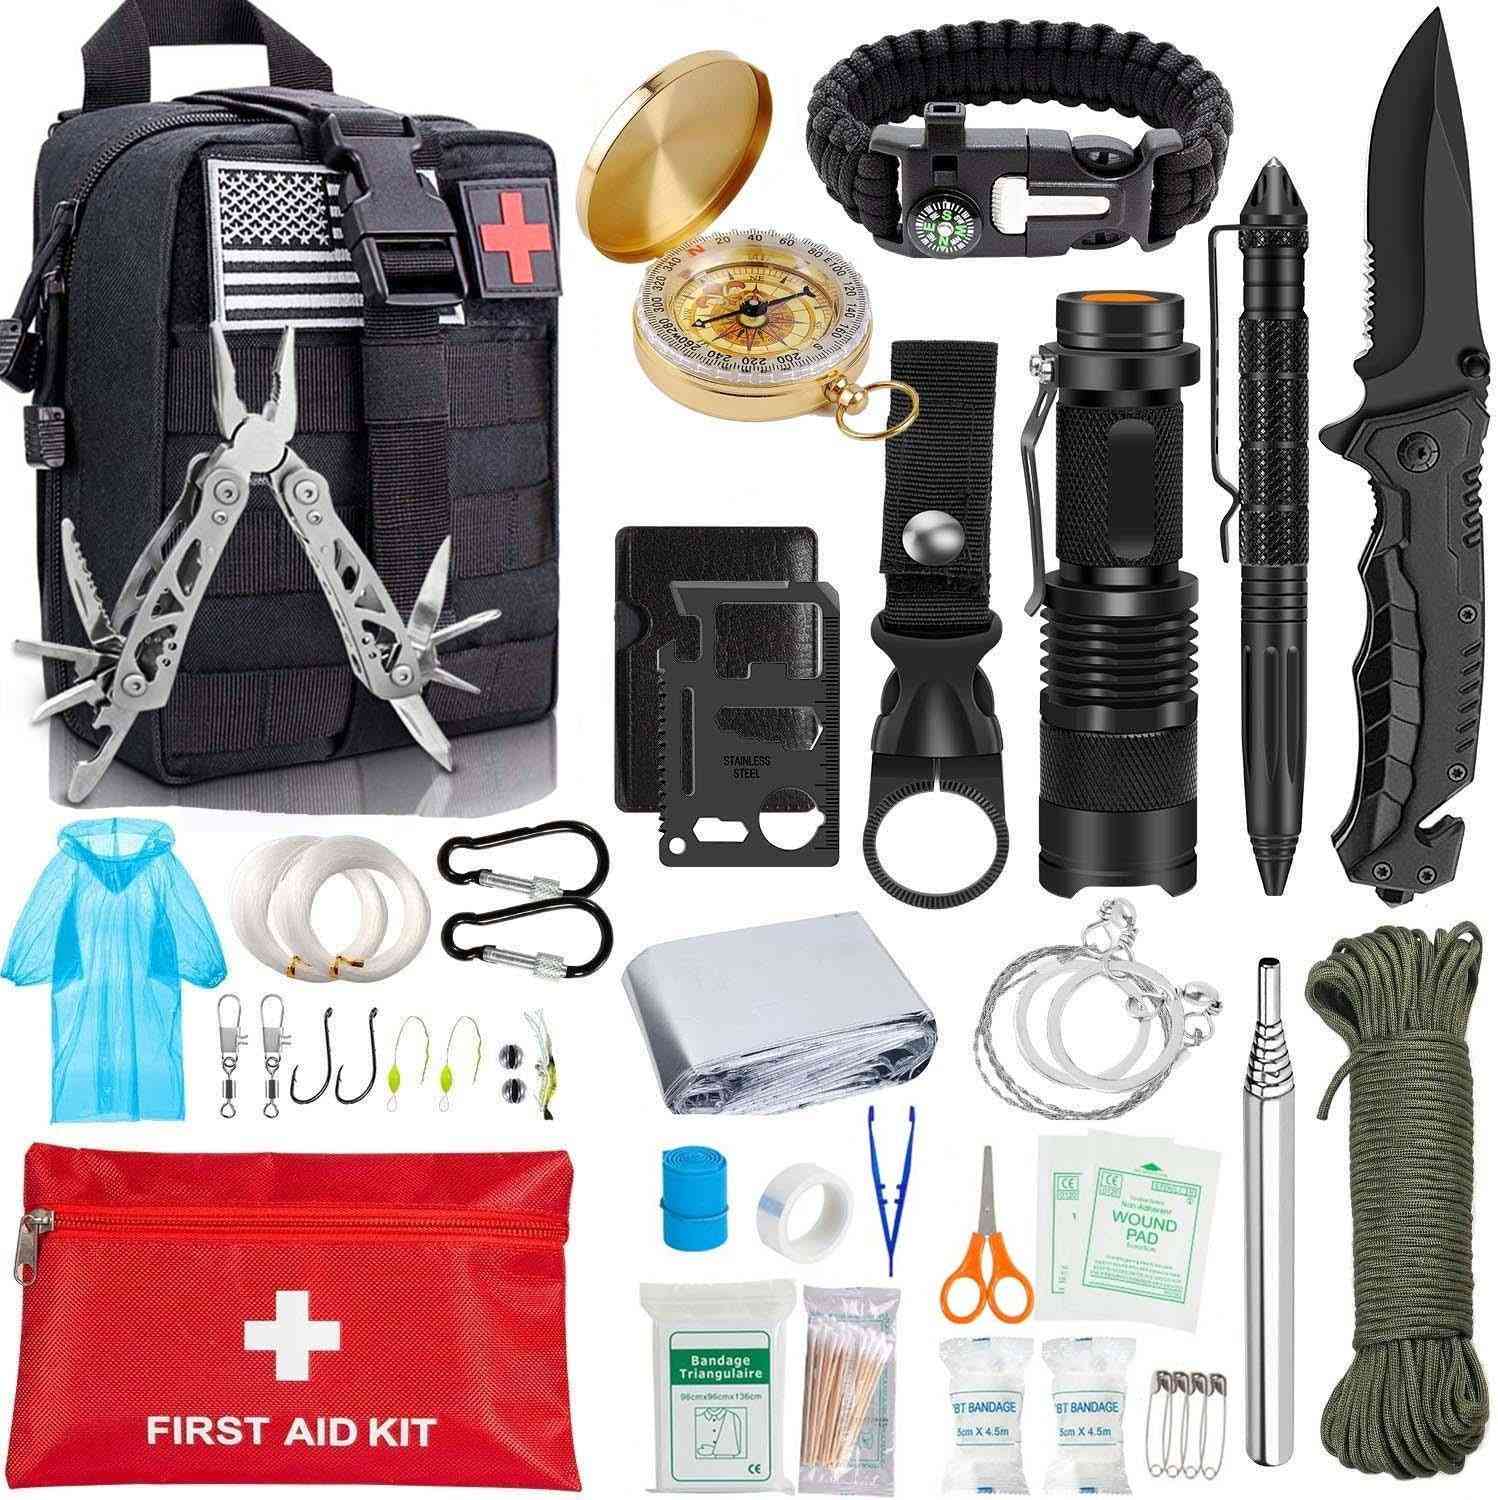 Edc survival, redskapssats - filt, taktisk penna, ficklampa, tång, trådsåg